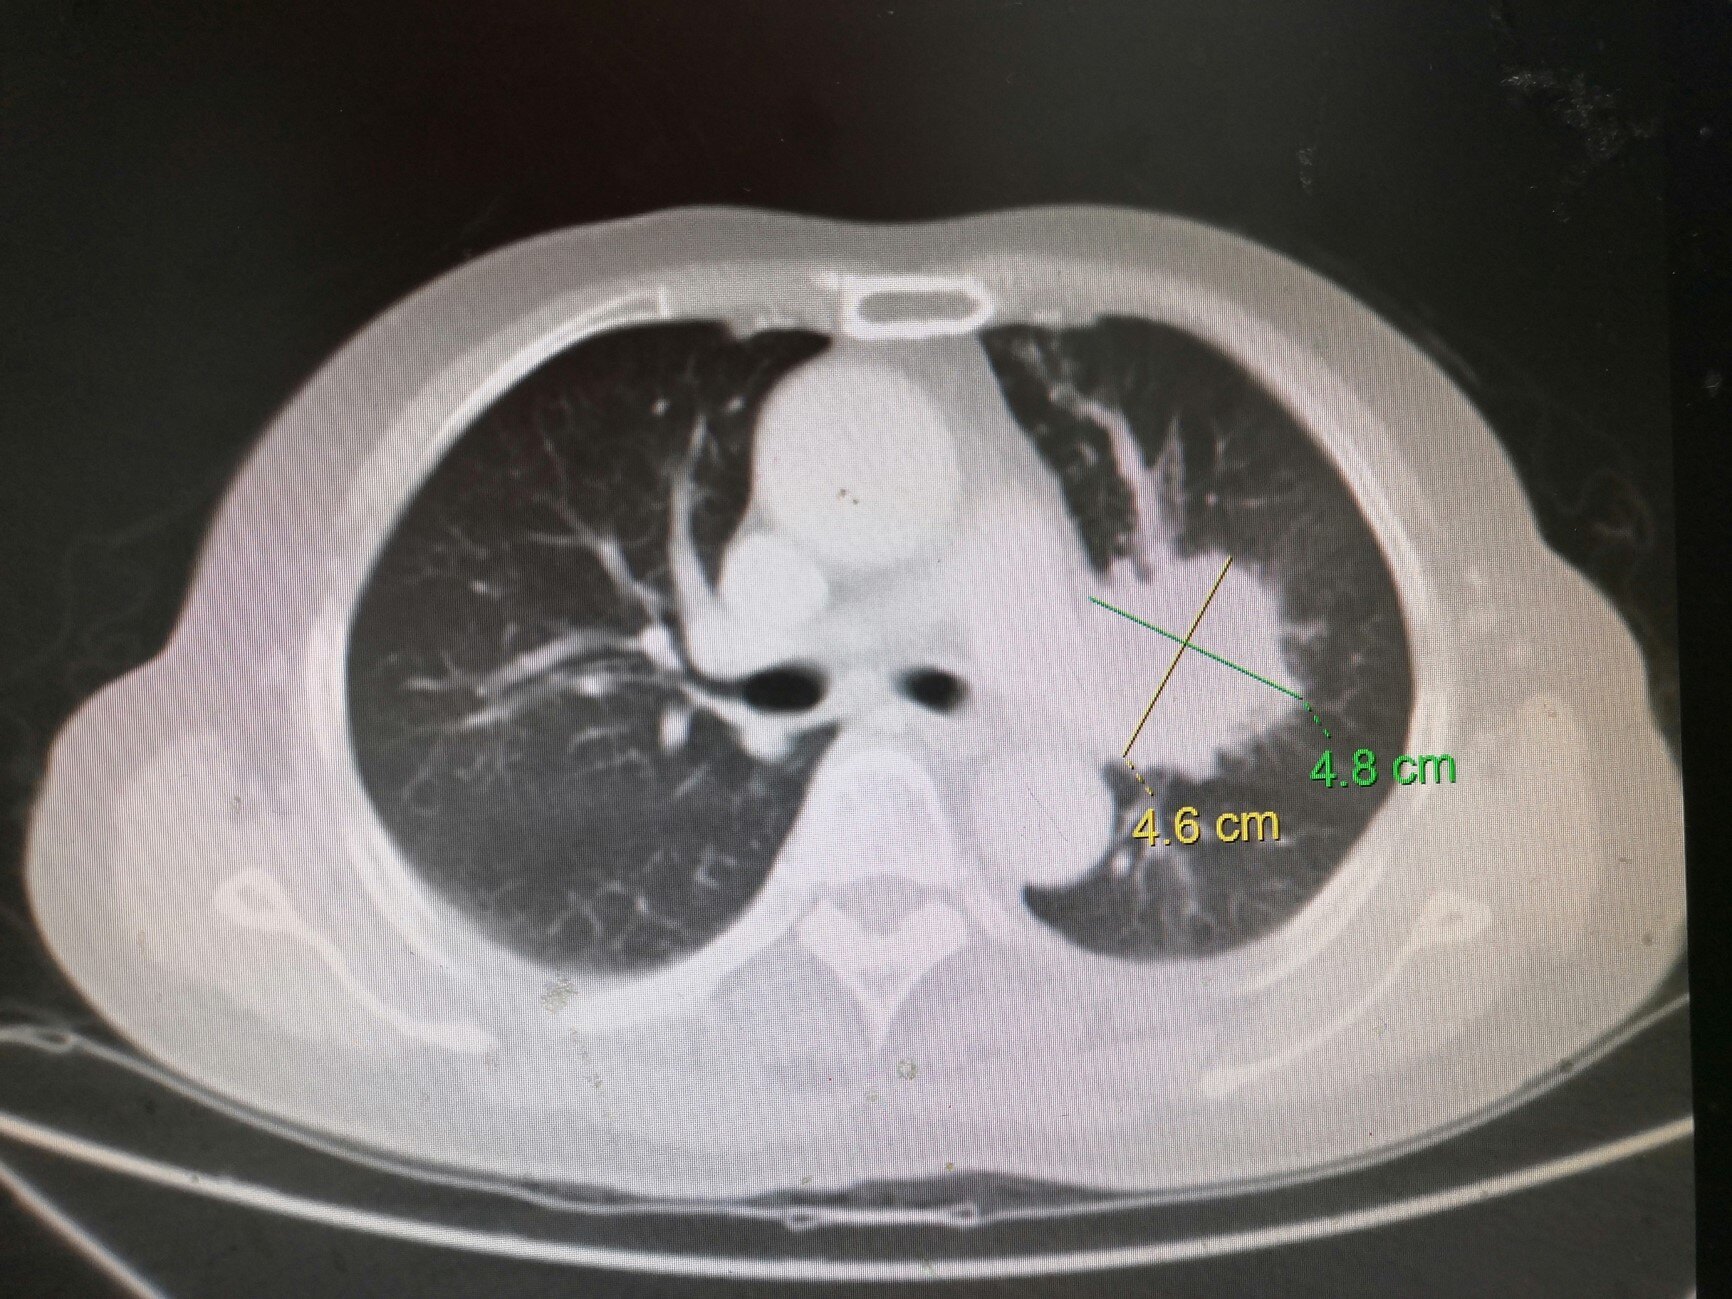 肺癌晚期的肺照片图片